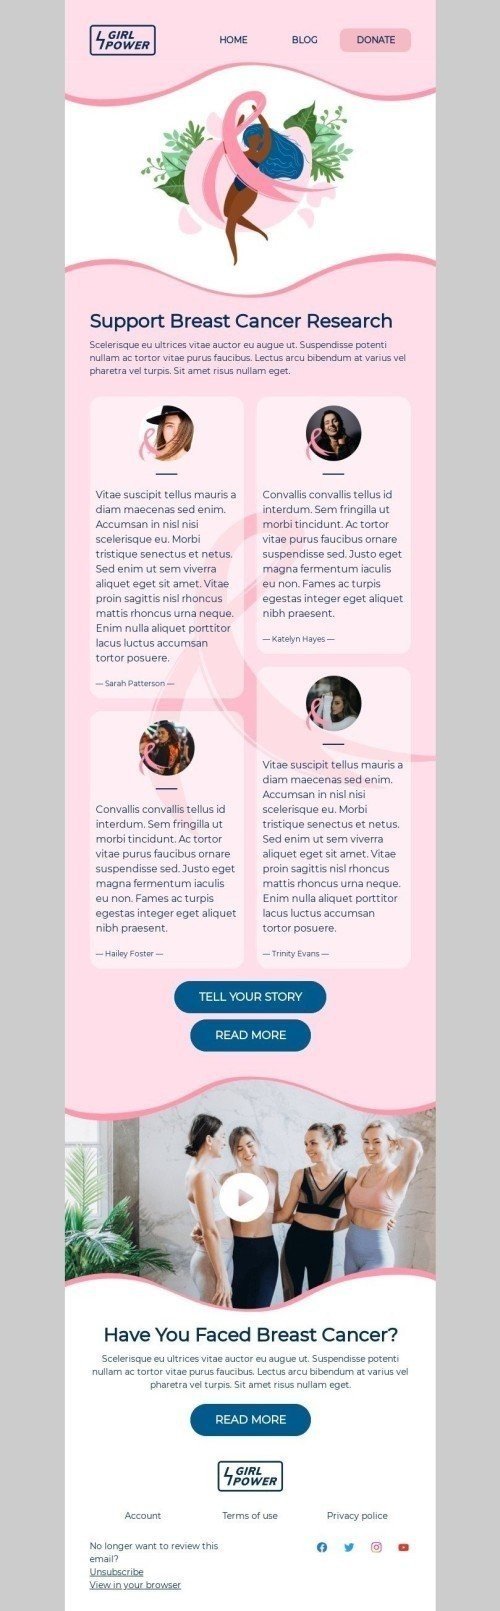 Modèle de courrier électronique Octobre rose «Soutenez la recherche sur le cancer du sein» pour le secteur Association à but non lucratif et caritative Affichage ordinateur